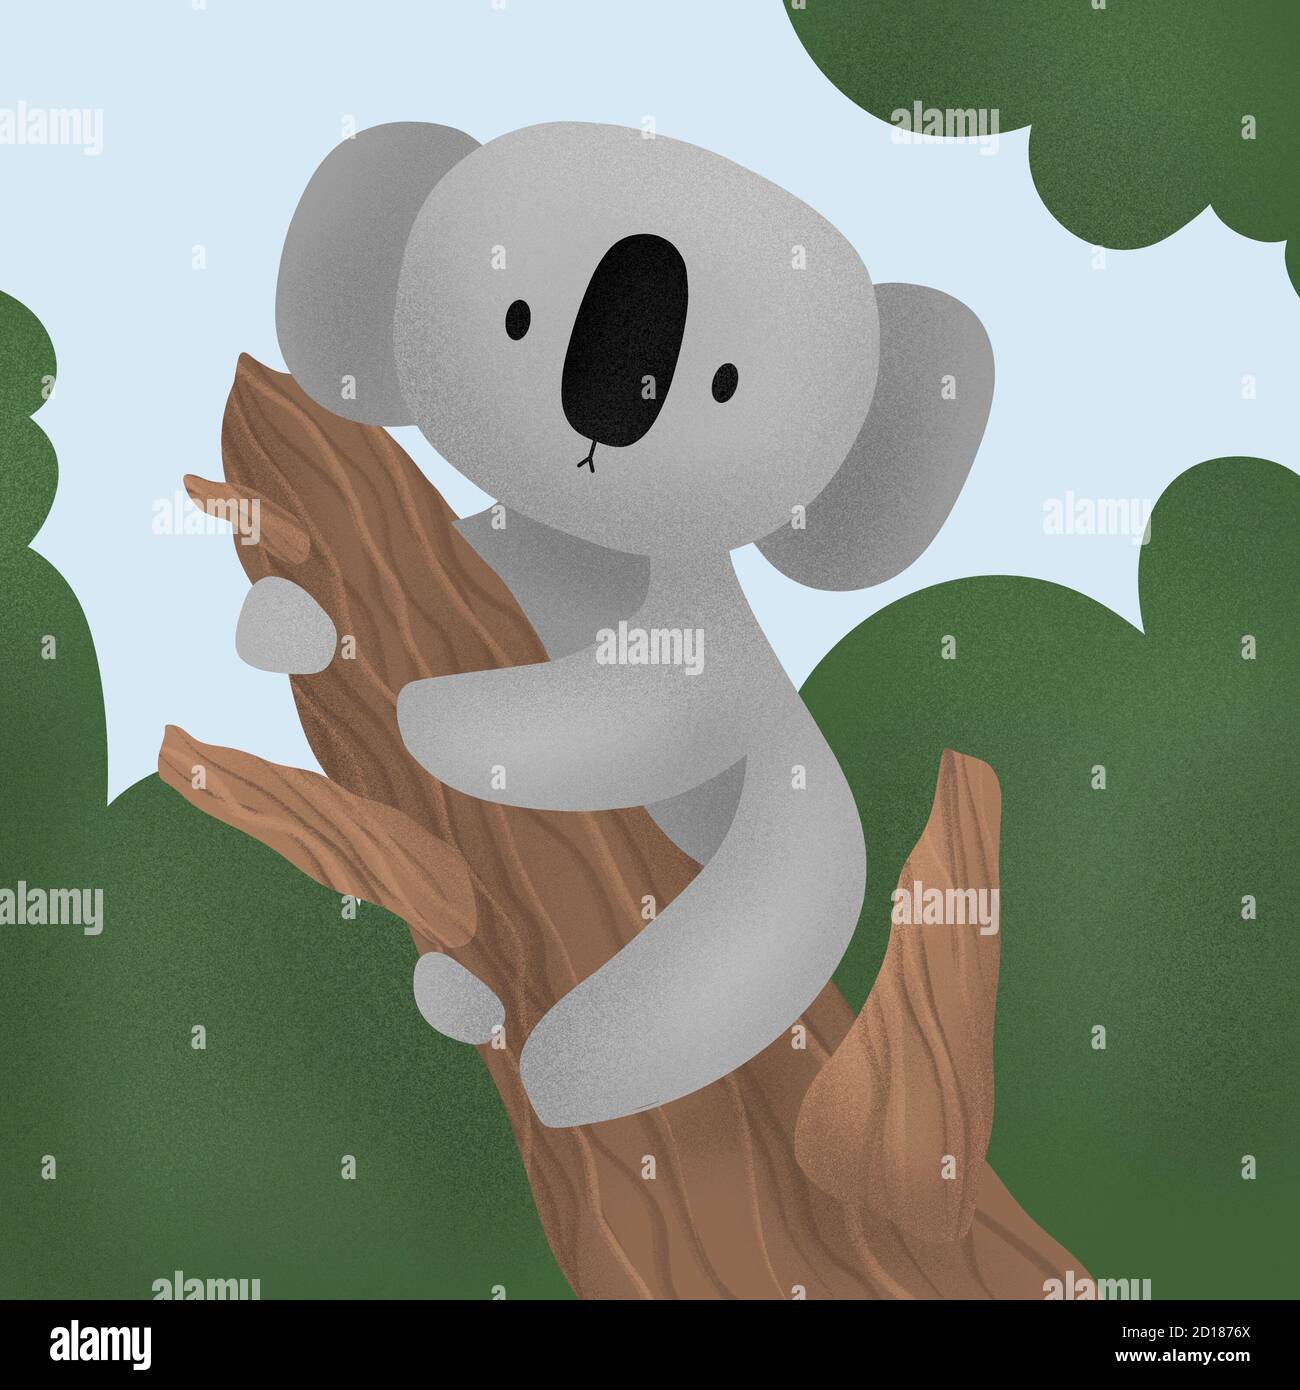 Niedliche Cartoon-Figur Koala. koala sitzt auf einem Baum. Print für Baby-Dusche-Party, Tapete, Stoff-Druck, Geschenkpapier oder Verpackung, Einladungen und Grußkarte. Travel Australia Konzept Stockfoto